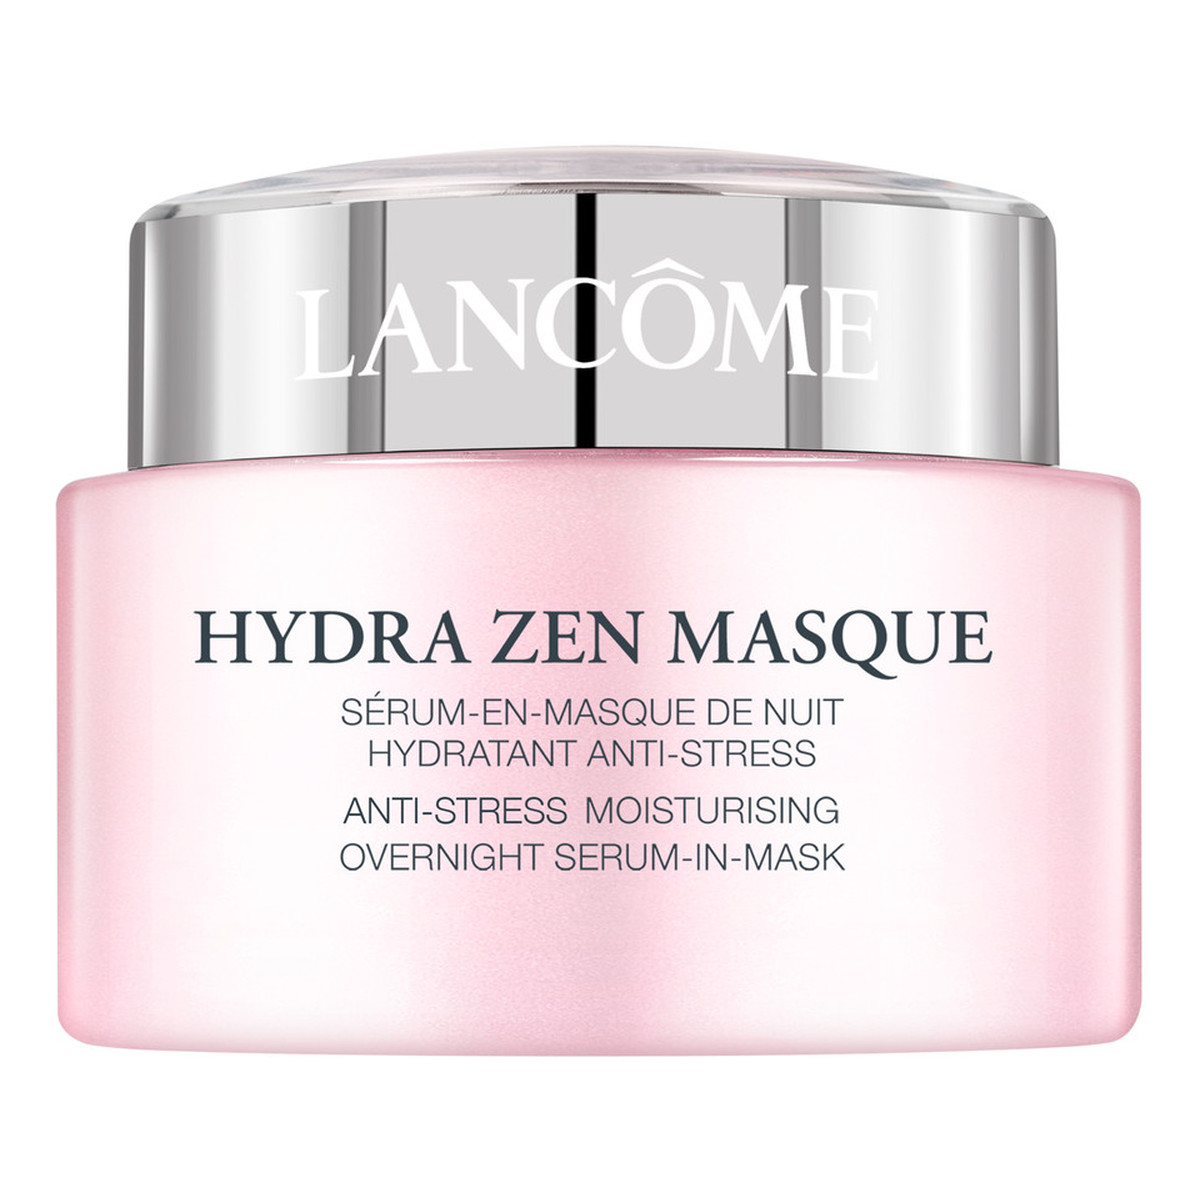 Lancome Hydra Zen Masque Maska-serum na noc do wszystkich rodzajów skóry 75ml